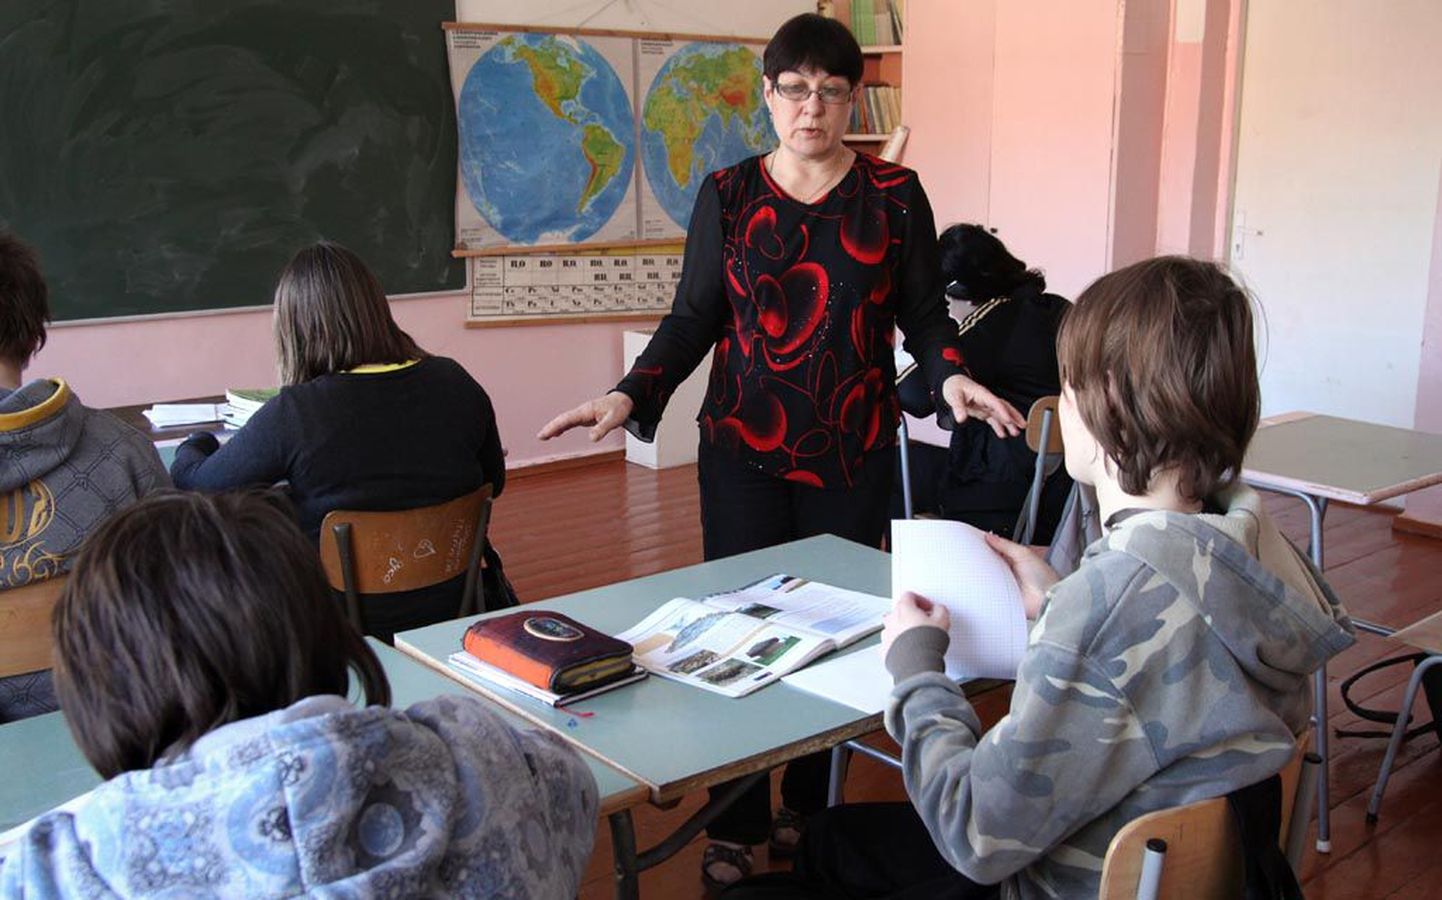 Sindi gümnaasiumi vene õppekeelega 5.-9. klassis õpib viie klassi peale kokku 14 last. Pildile jäi tunnis 7.-8. liitklass ning keemia- ja bioloogiaõpetaja Tatjana Estreich.